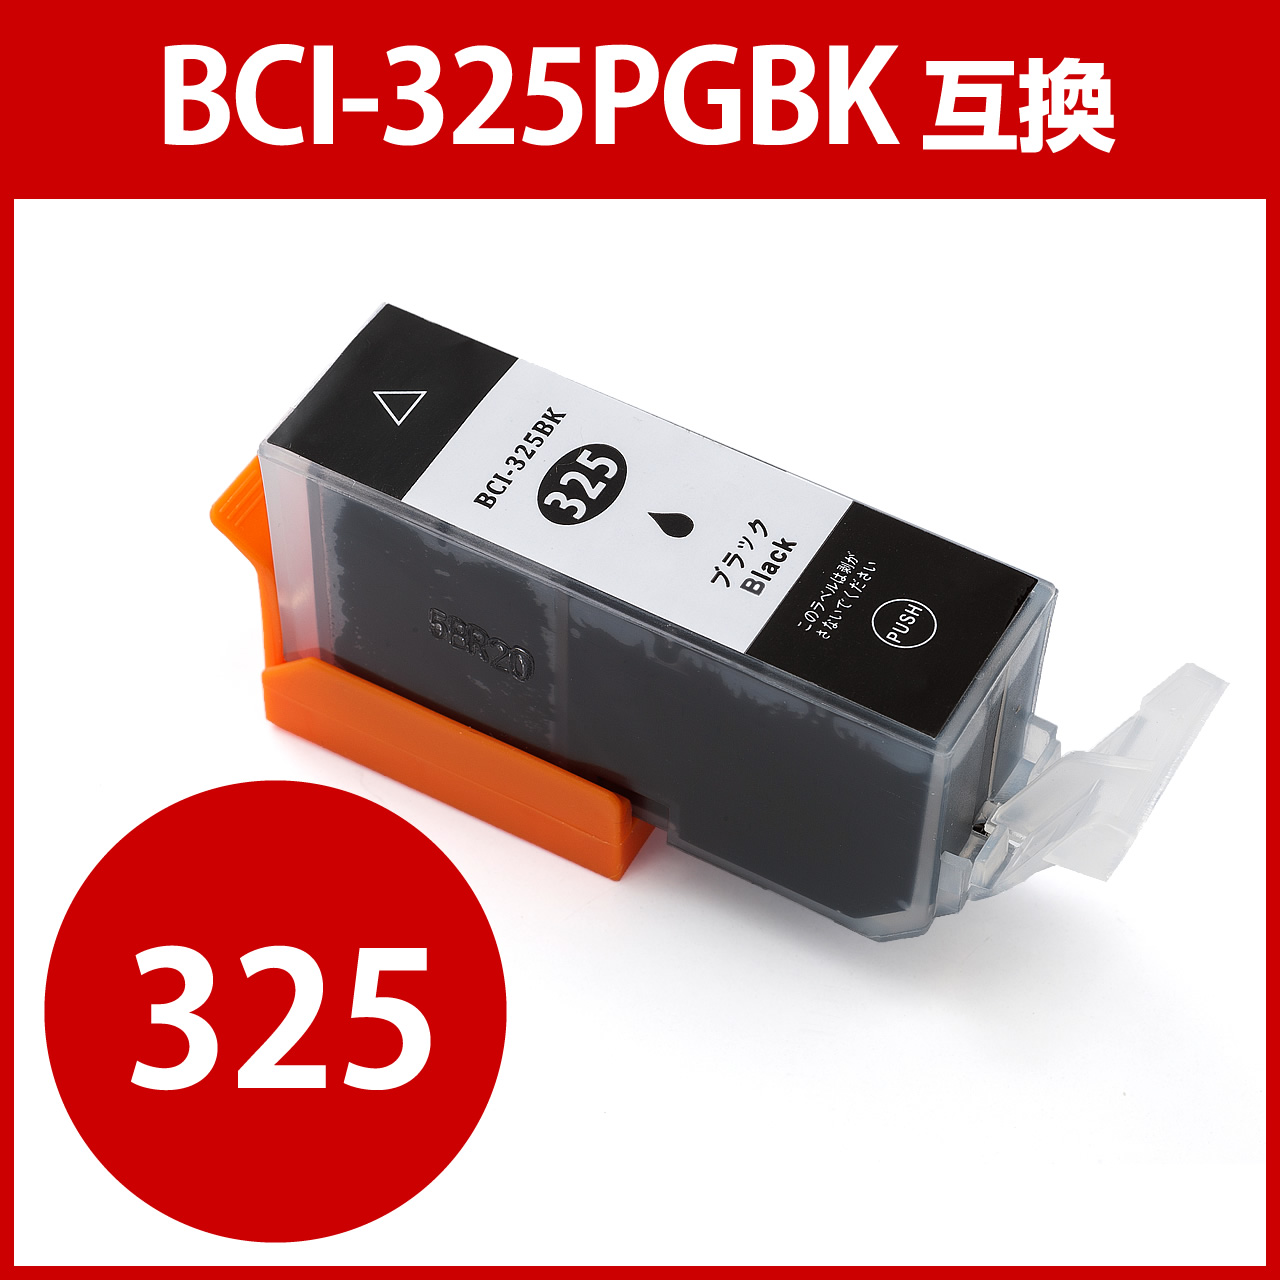 BCI-325PGBK Lm݊CN 痿ubN 300-C325BN